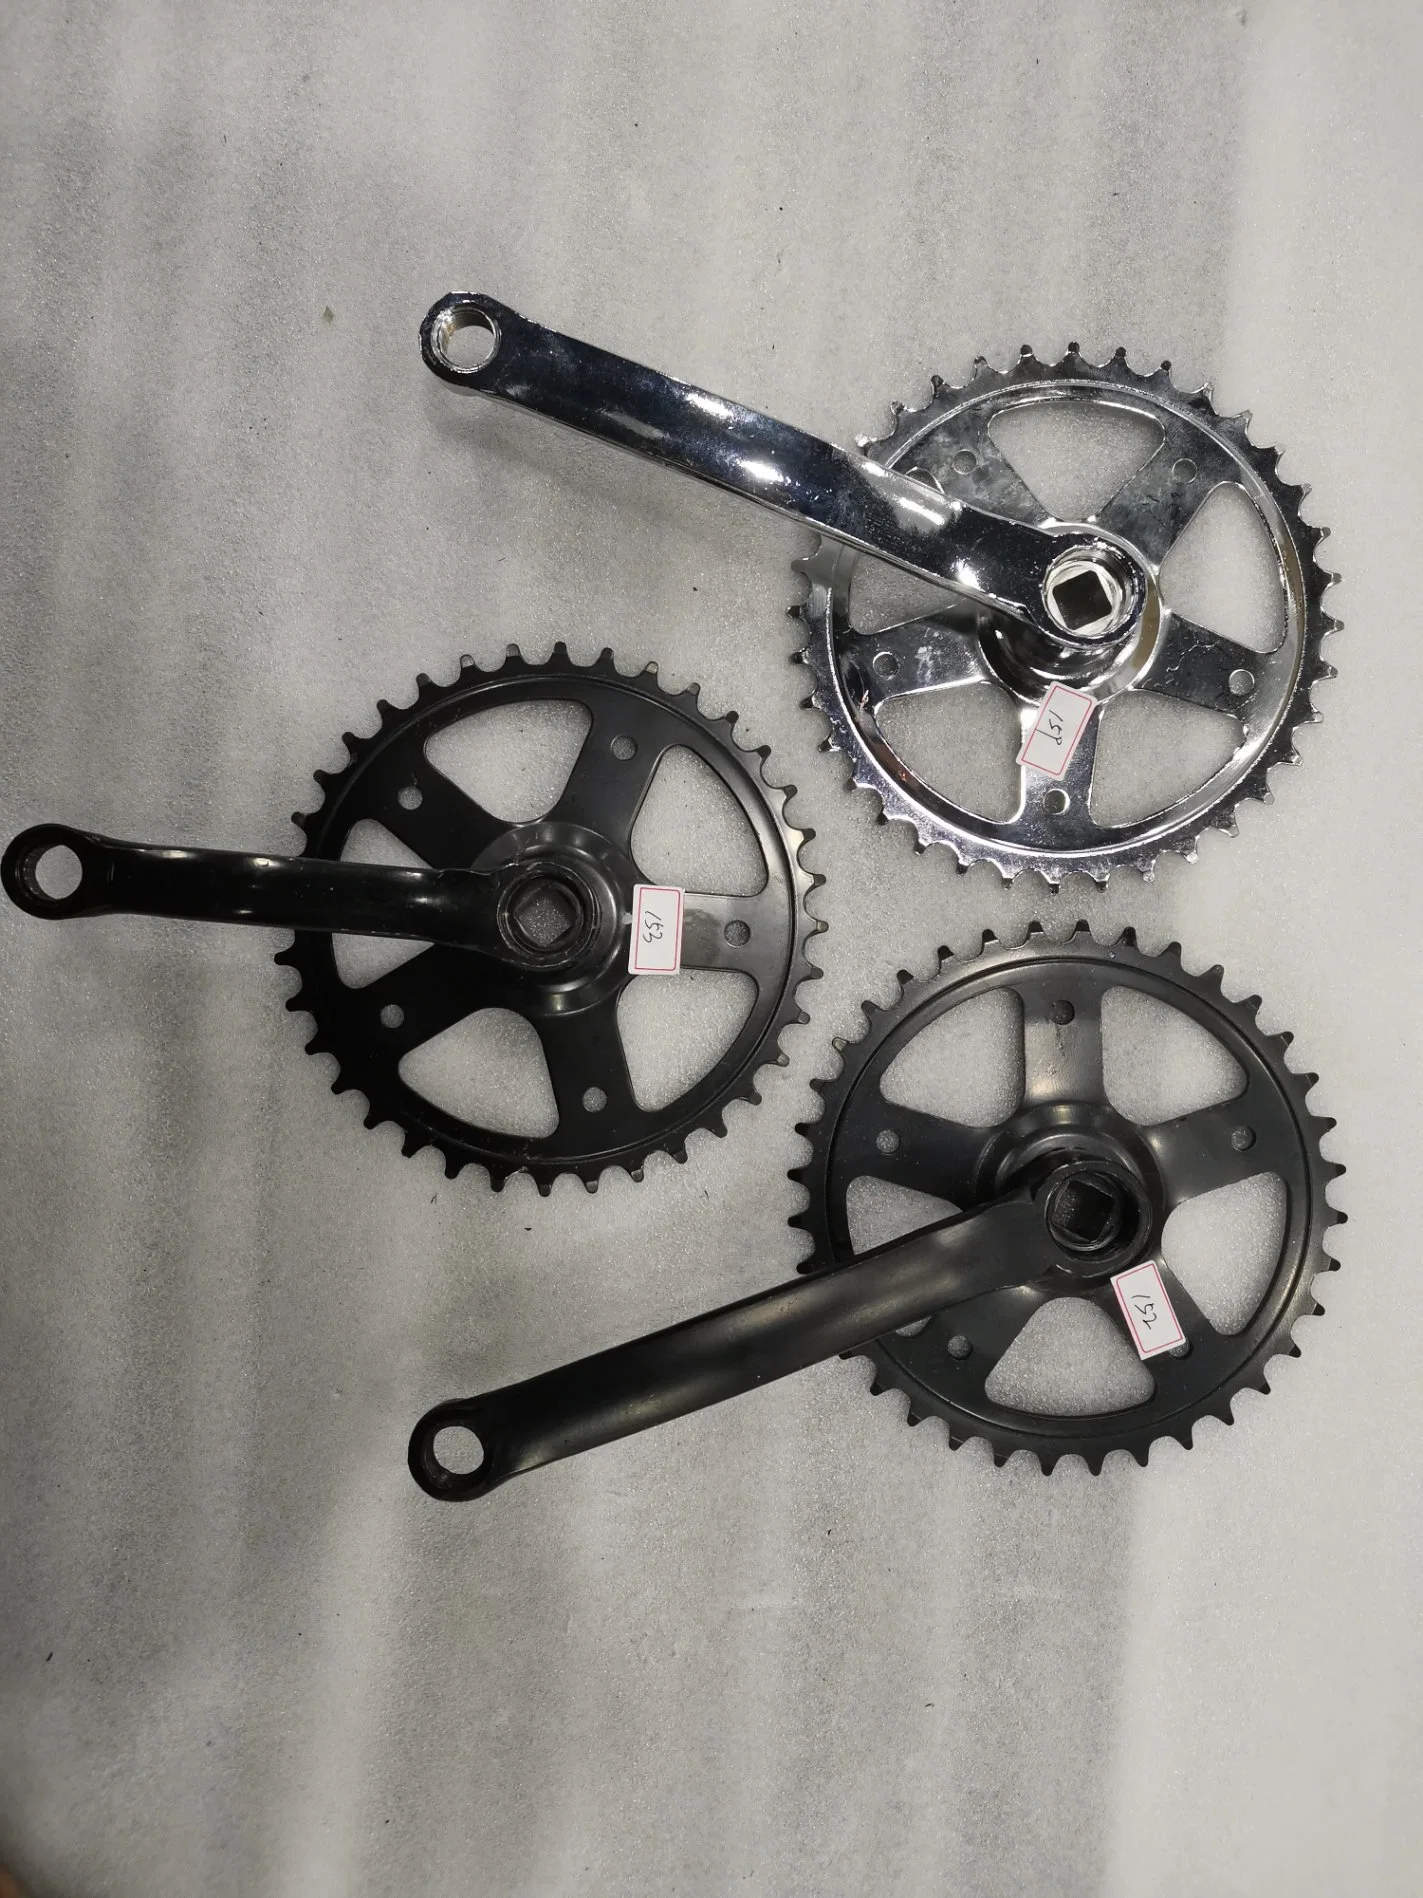 Manivela de bicicleta de aleación de aluminio de la rueda dentada ruedas de la cadena de bicicleta Chainwheel bicicleta plegable disco marcha positivos y negativos